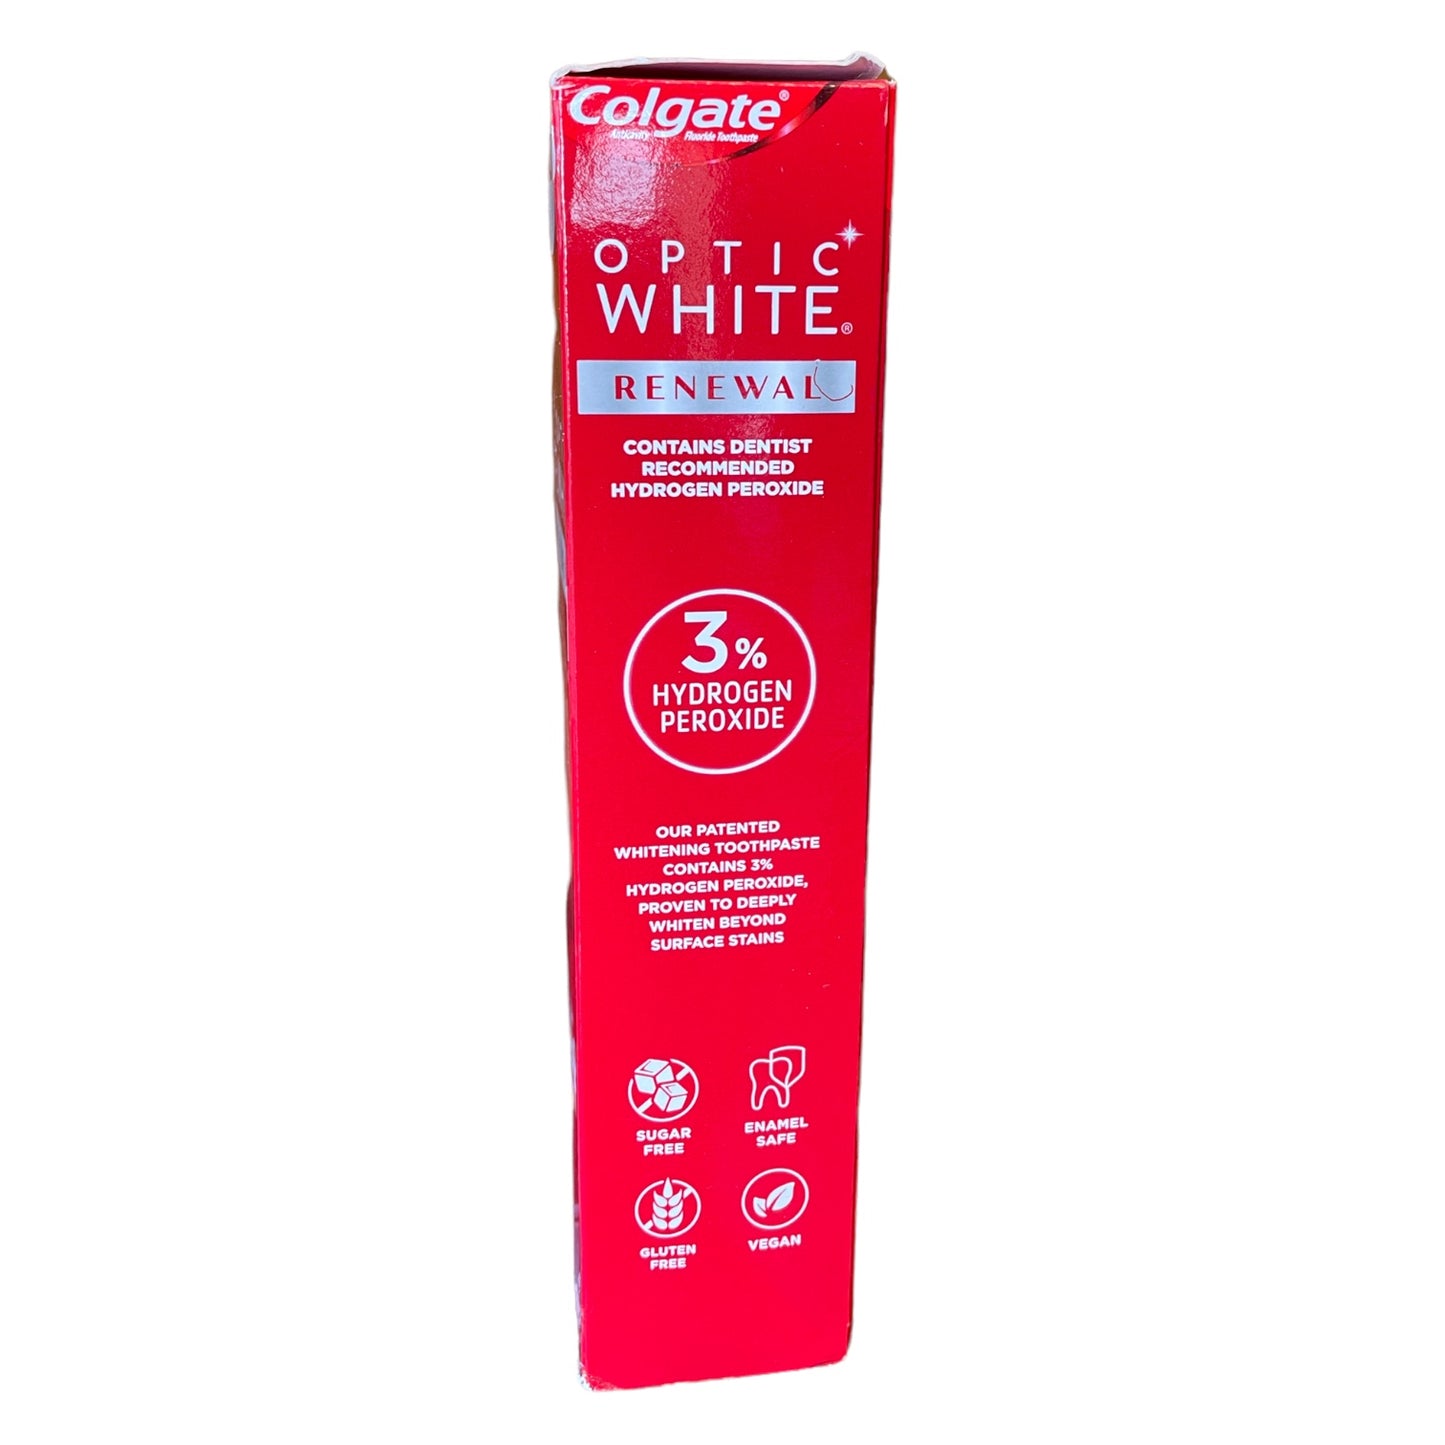 Colgate Optic White Renewal Teeth Whitening Toothpaste (4 x 4.3 Oz)